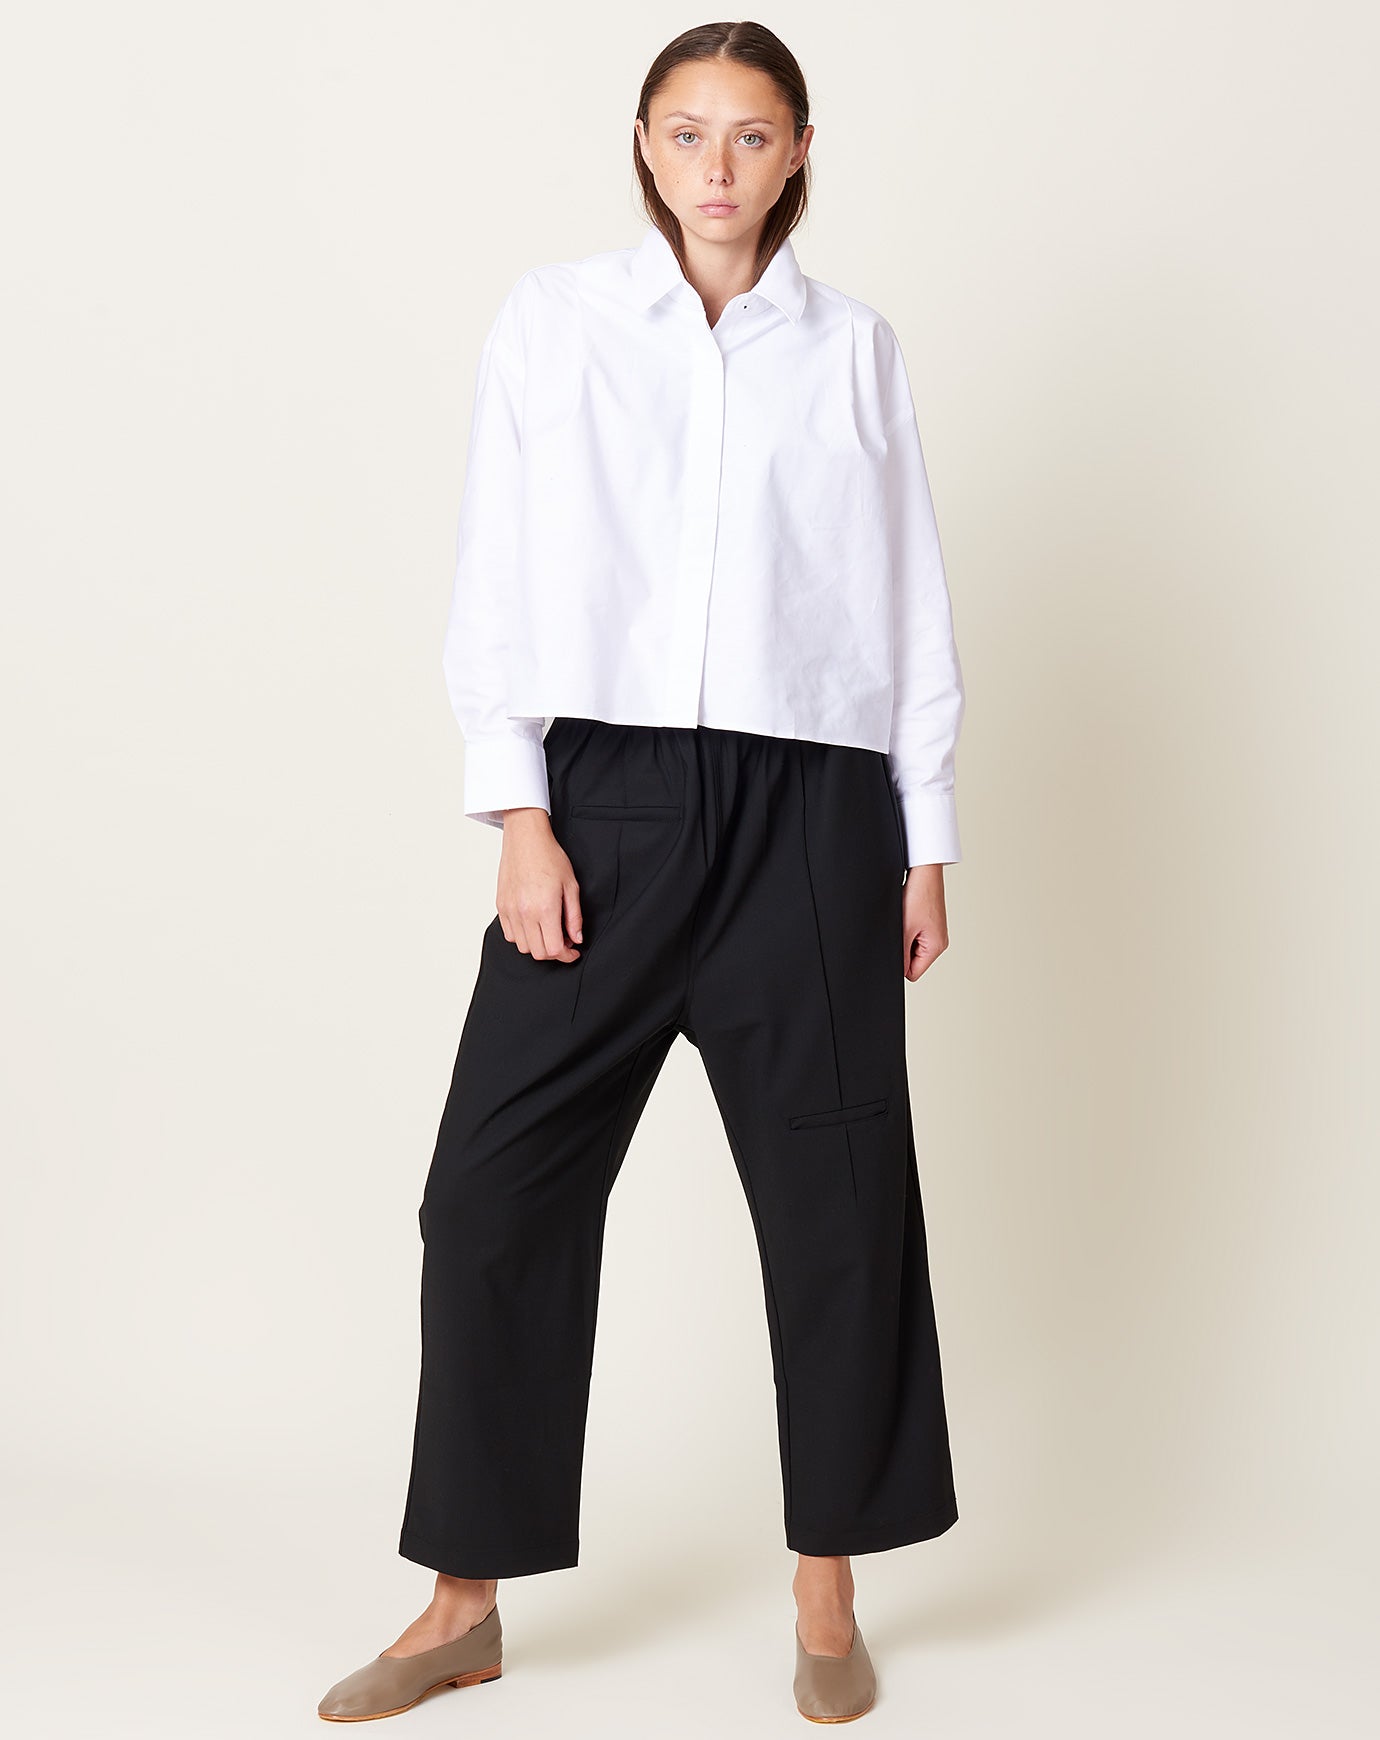 Cordera Tailoring Pocket Pants in Black